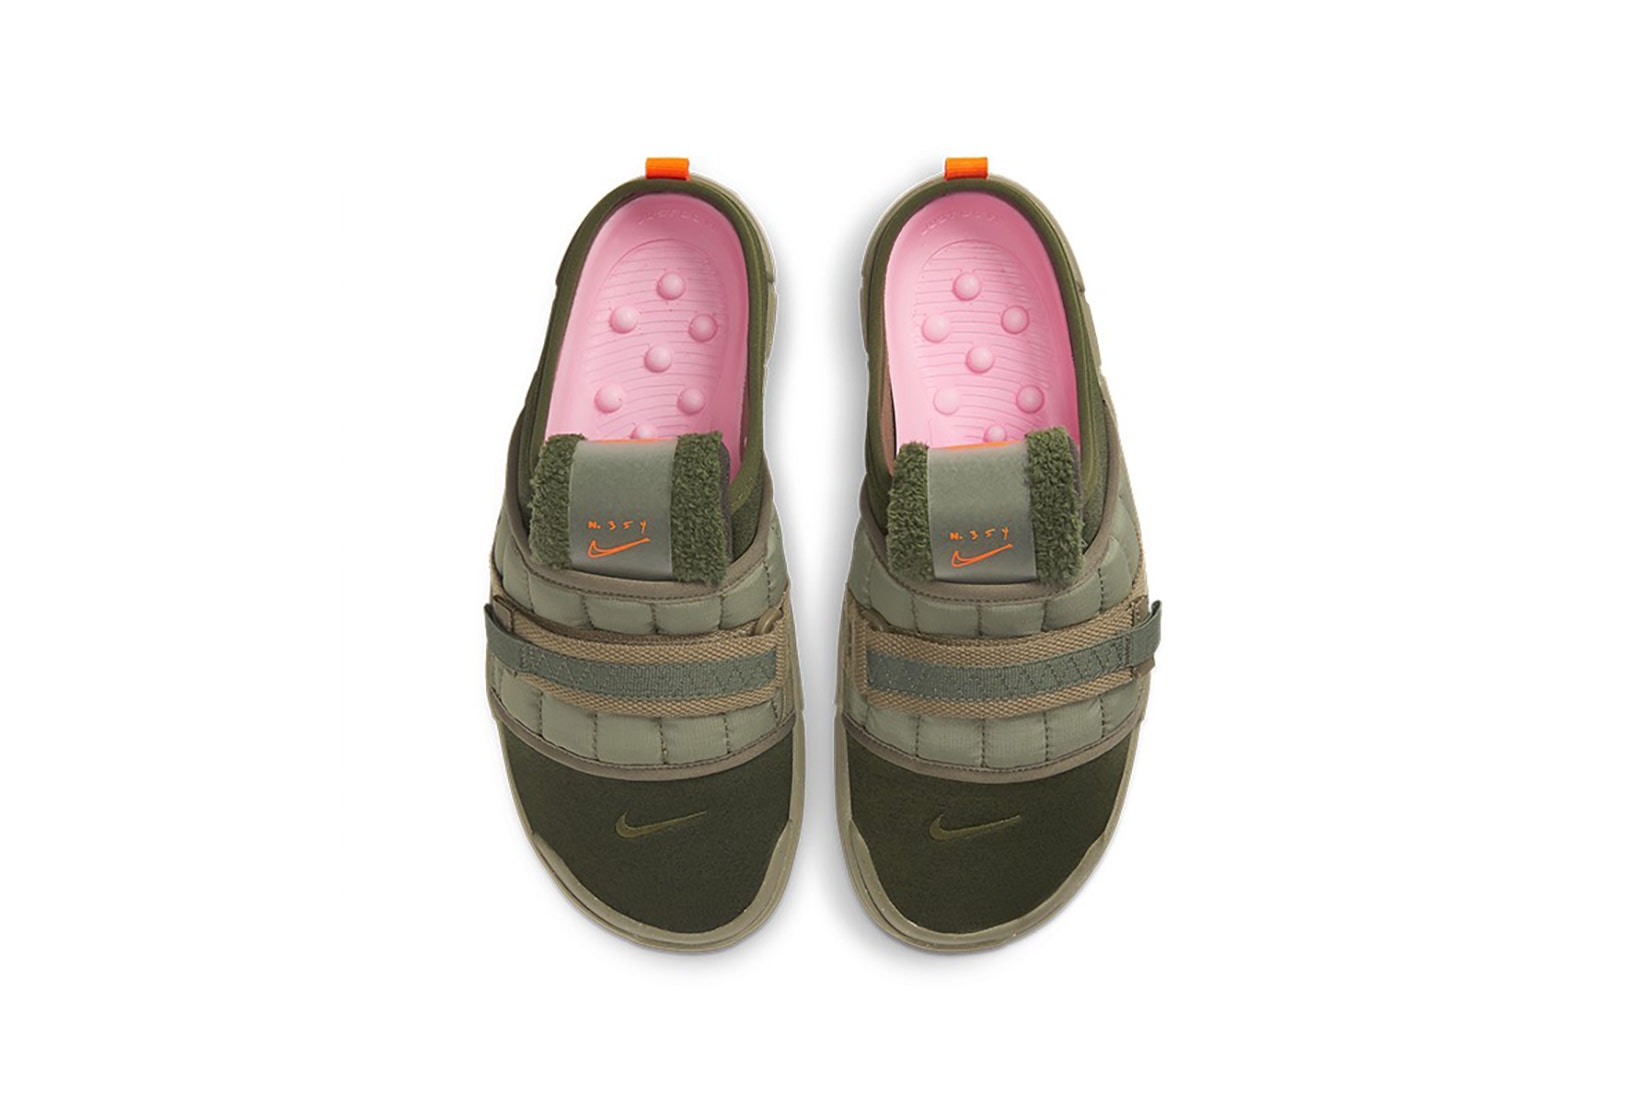 nike offline mules sandals slippers army olive green orange colorway footwear aerial birds eye view pink insoles